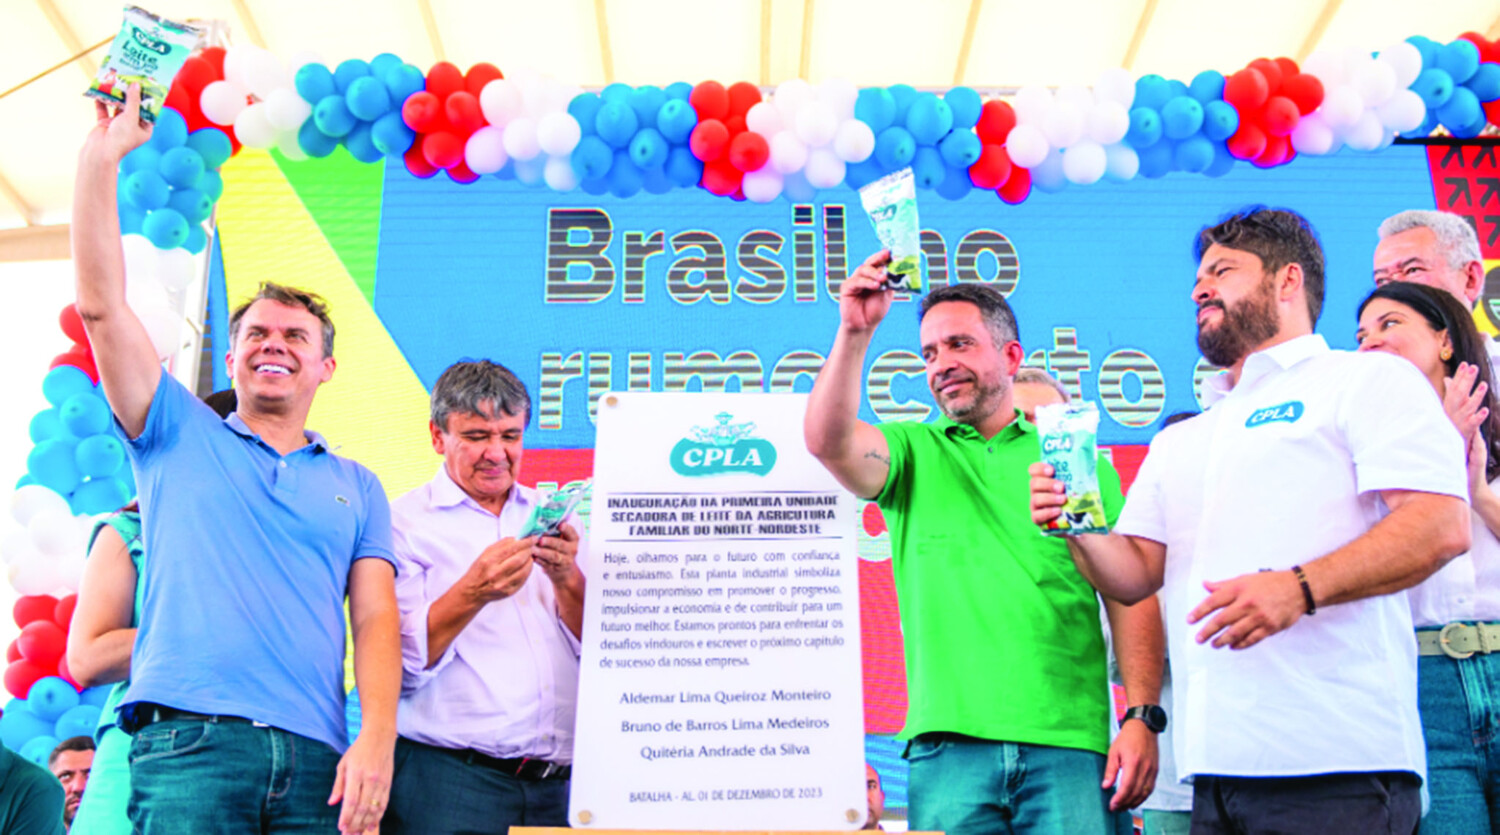 Solenidade com autoridades do estado e da união marcou a inauguração oficial da planta de leite em pó da CPLA